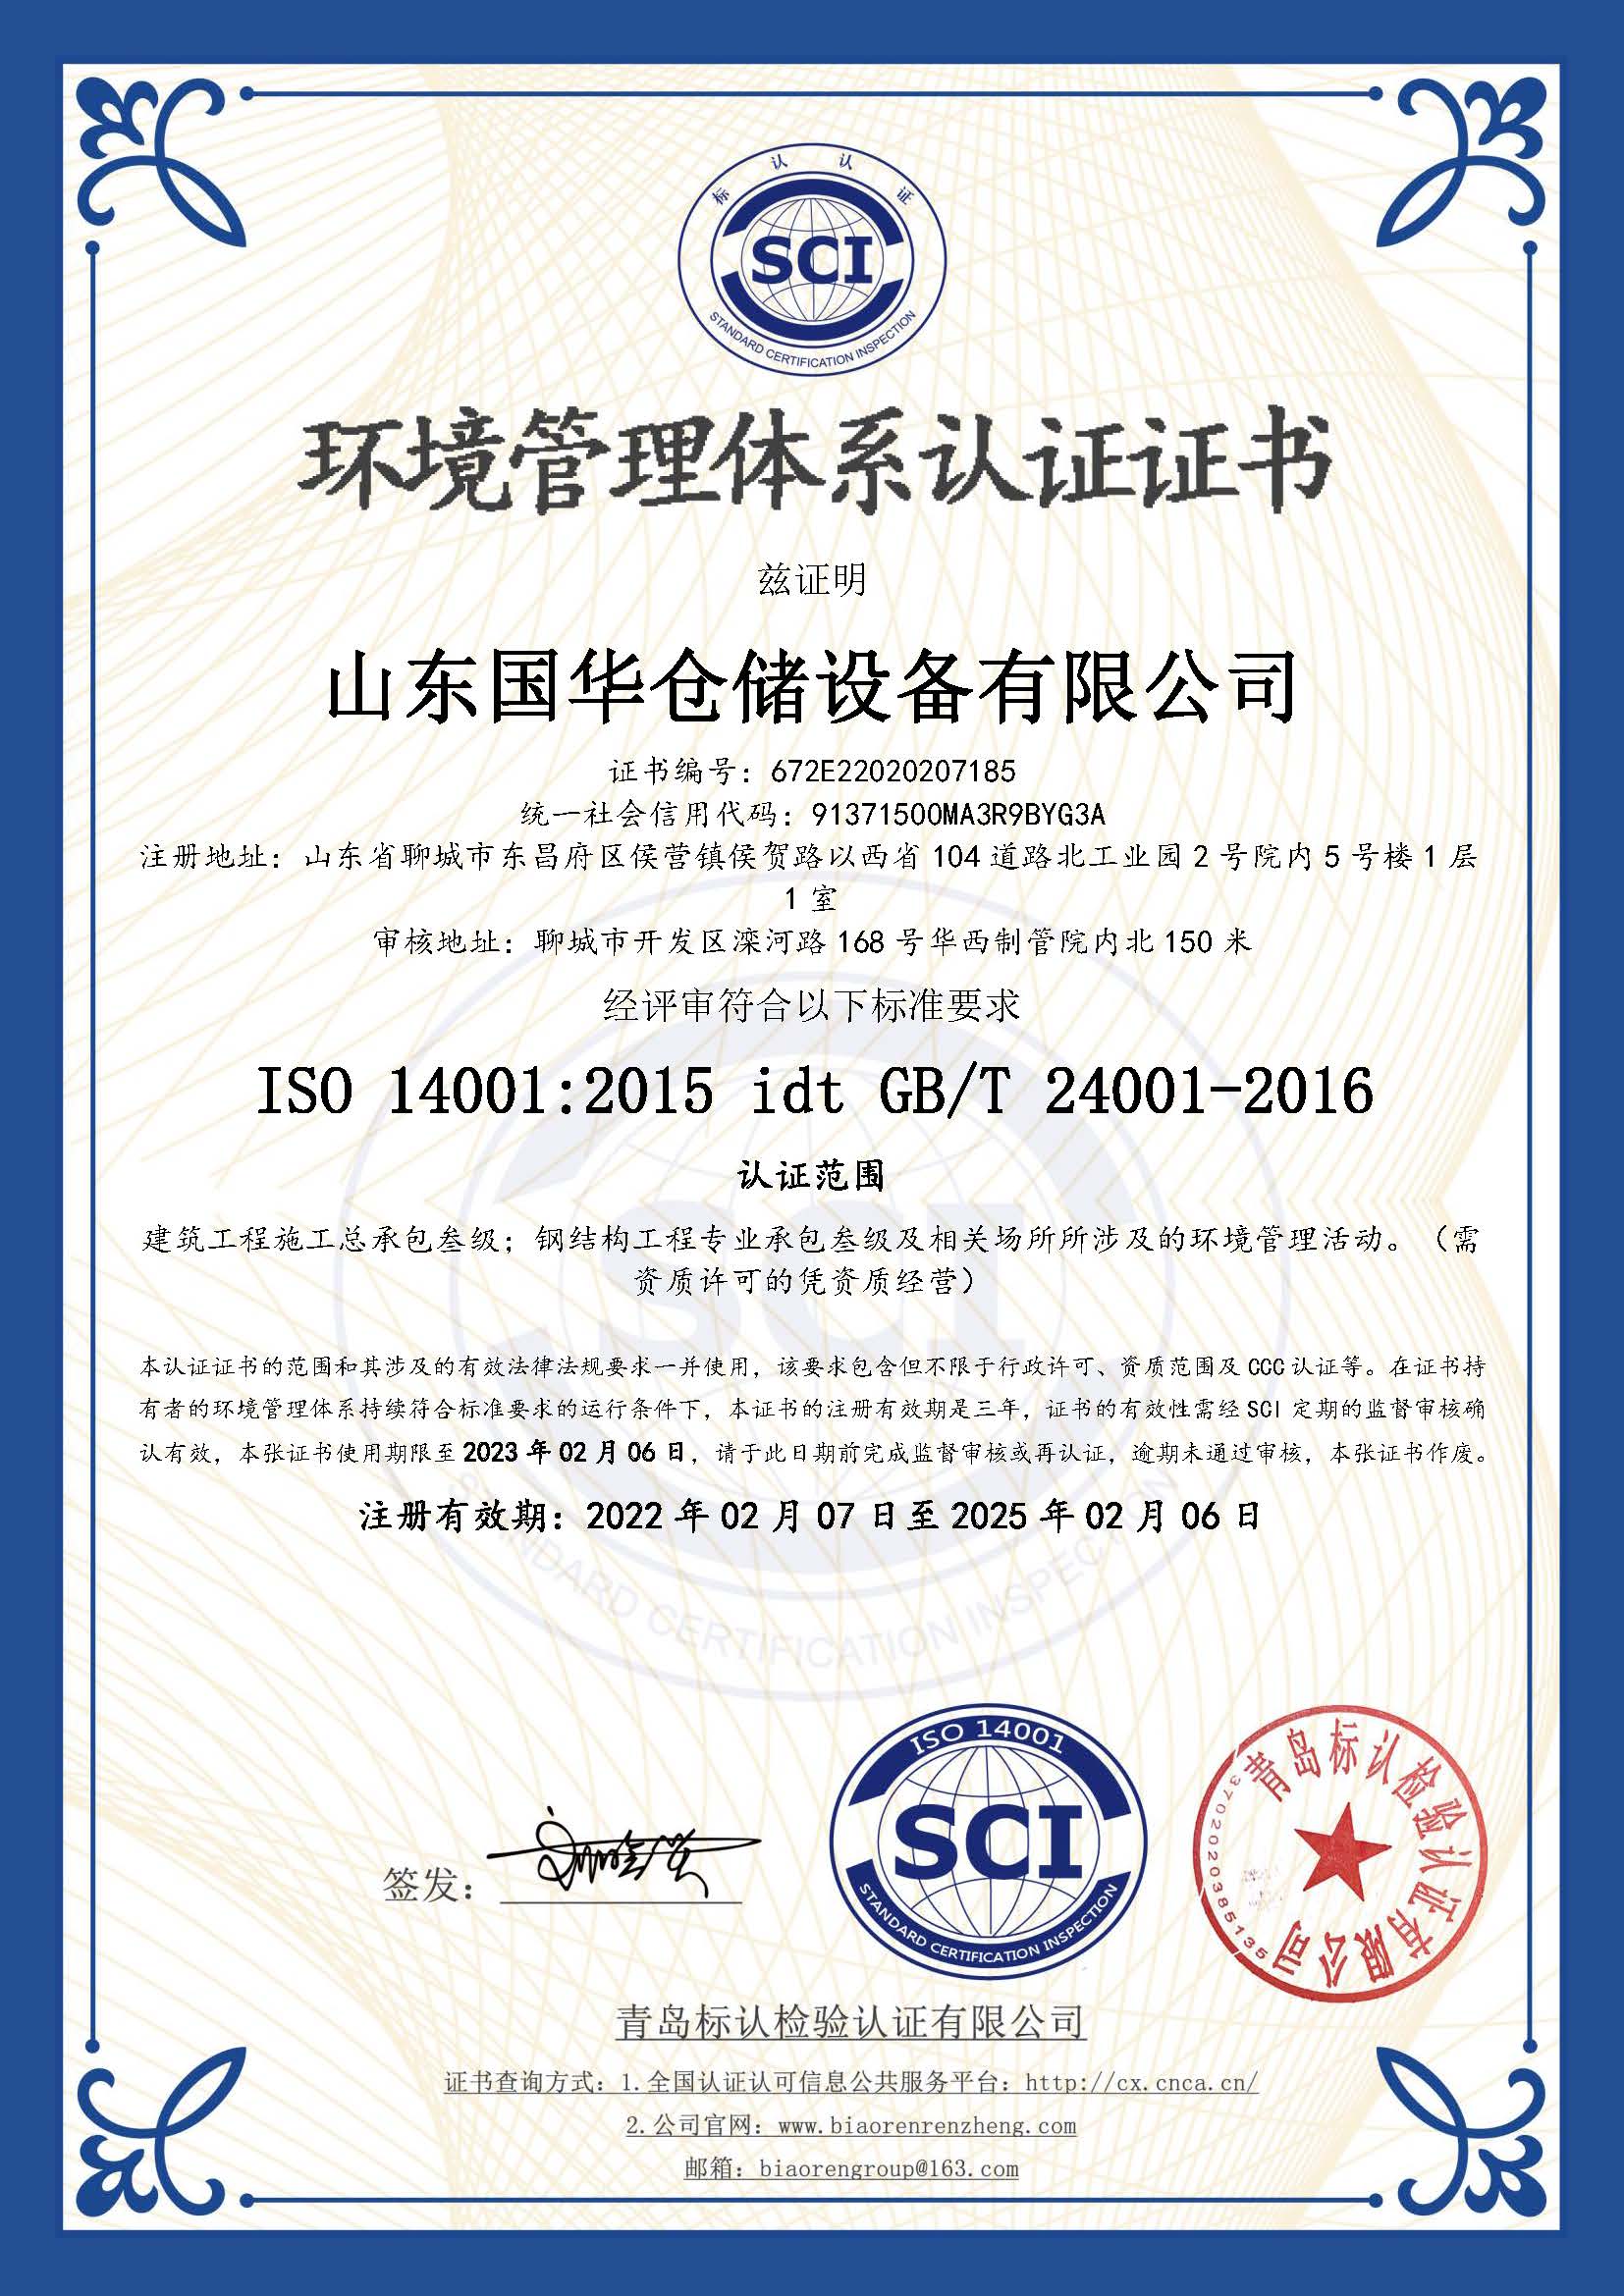 博尔塔拉钢板仓环境管理体系认证证书